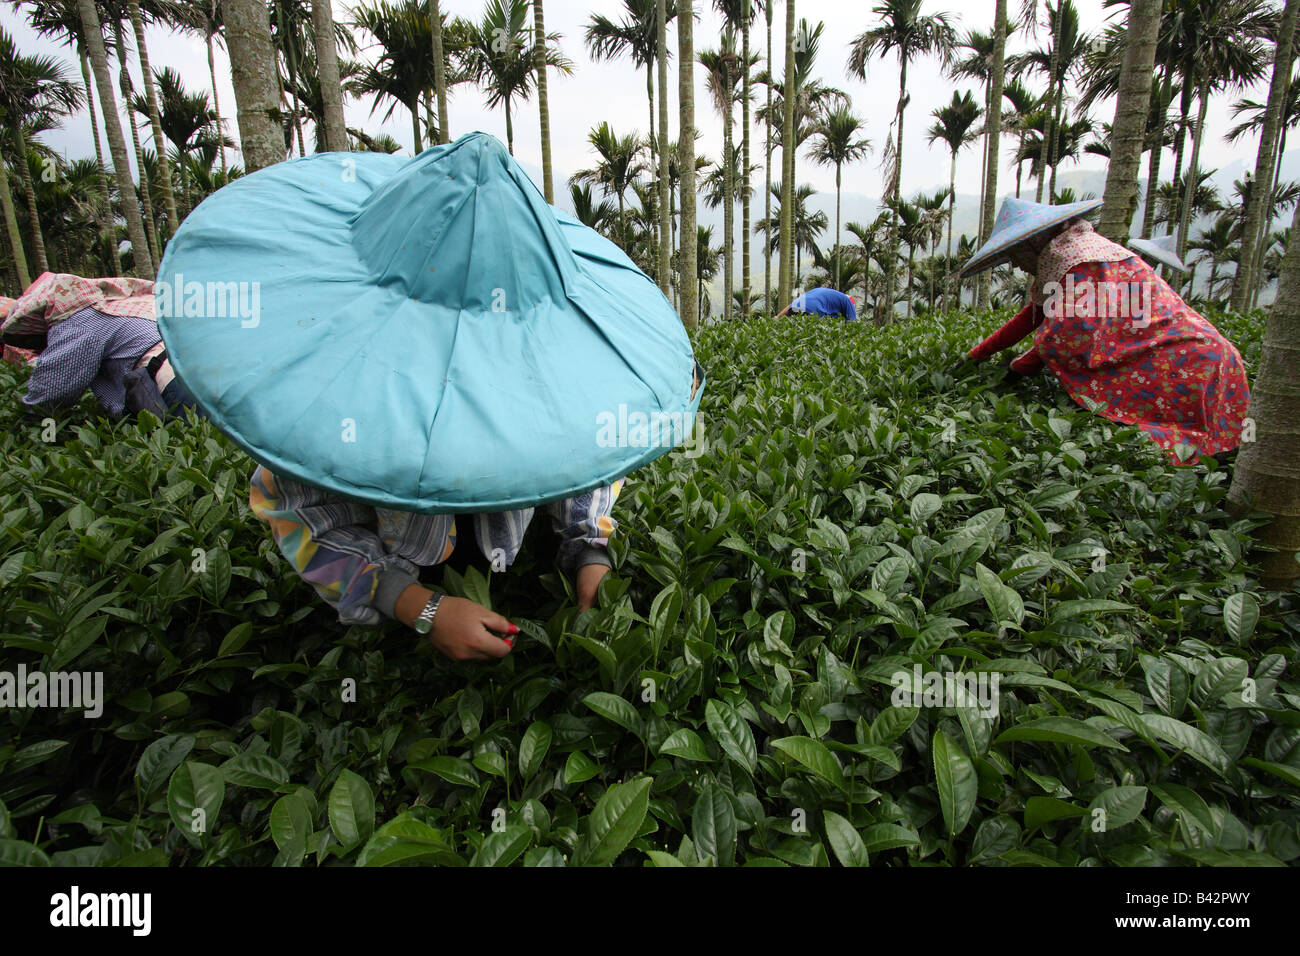 Tea pickers in Taiwan Stock Photo